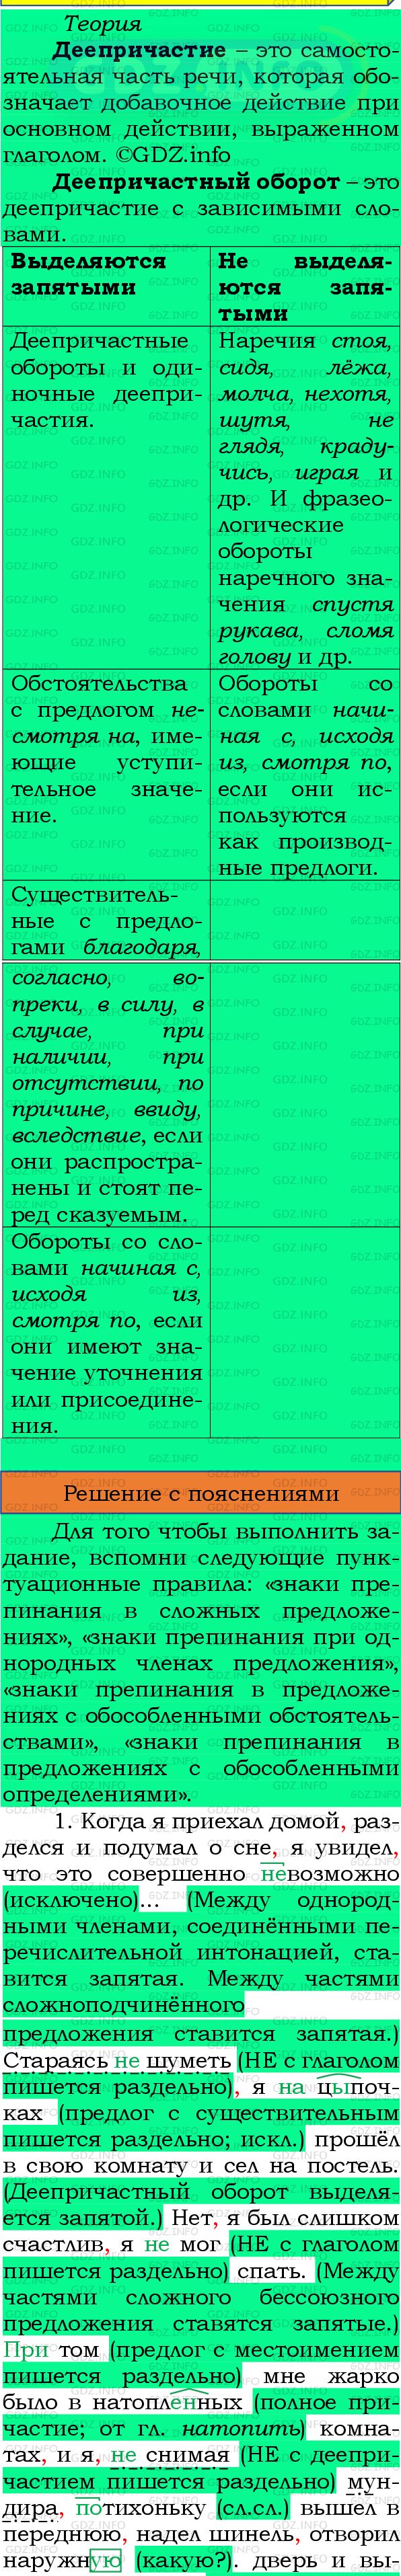 Фото подробного решения: Номер №423 из ГДЗ по Русскому языку 8 класс: Бархударов С.Г.